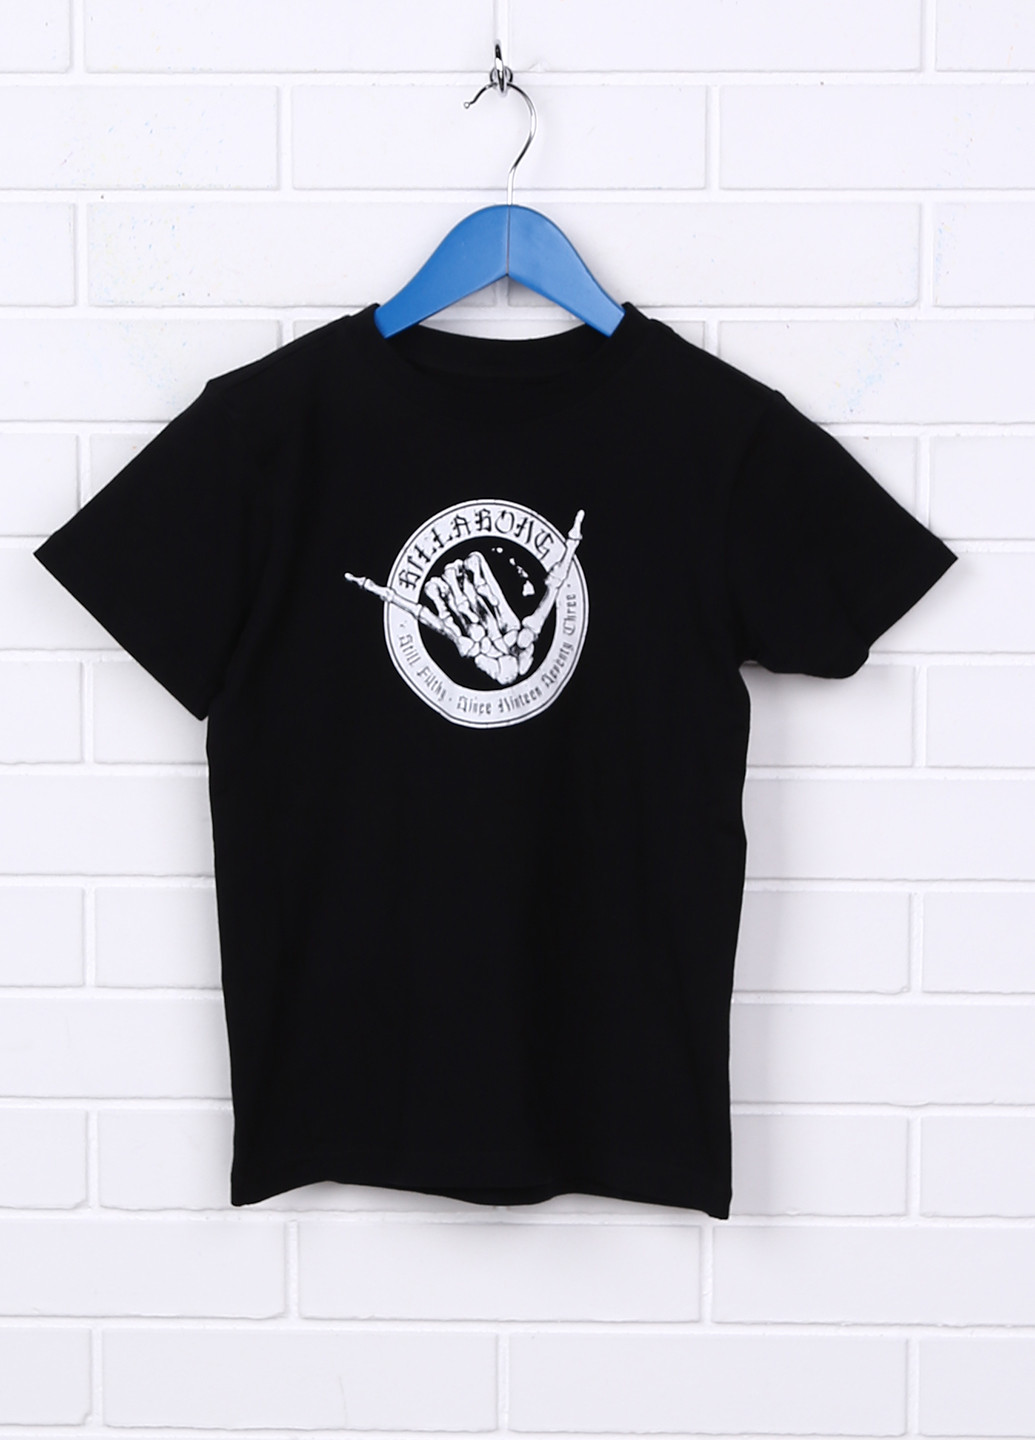 Черная летняя футболка с коротким рукавом Billabong